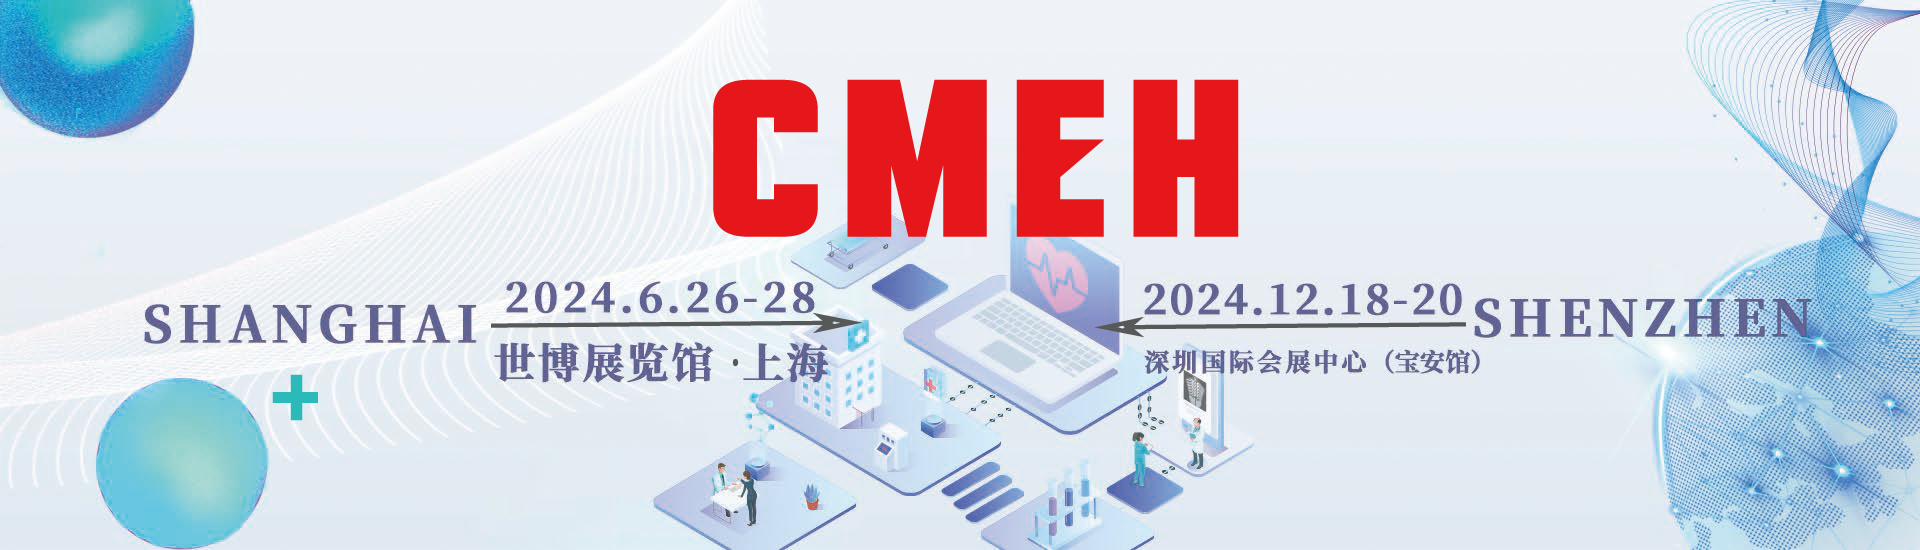 中国国际医疗器械展览会 提前申请有优惠